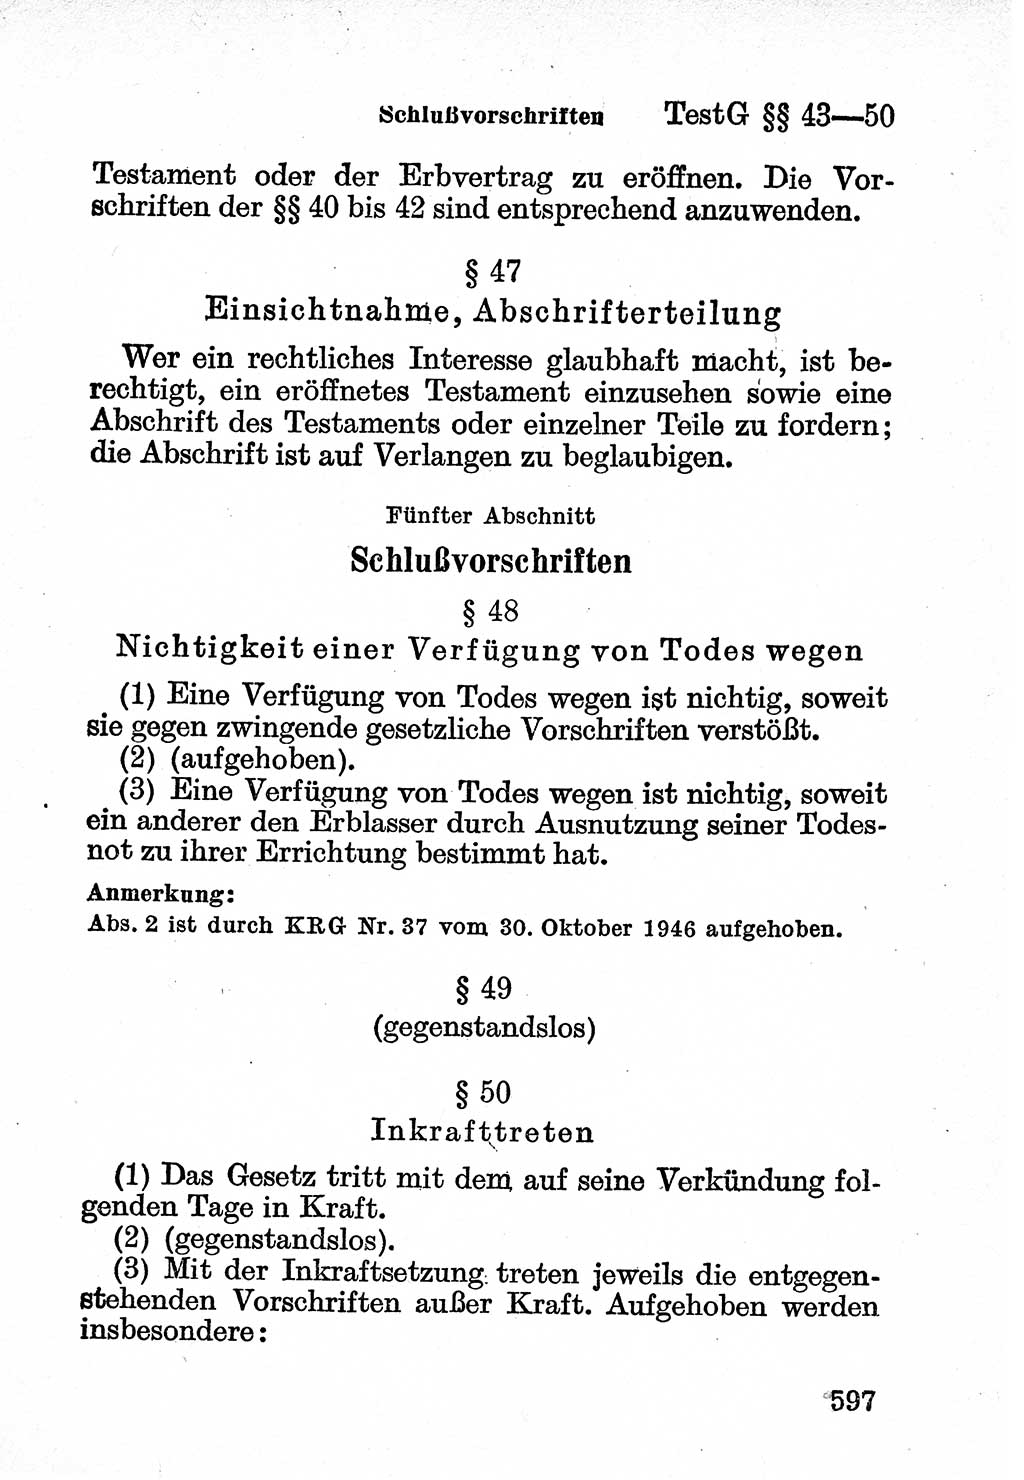 Bürgerliches Gesetzbuch (BGB) nebst wichtigen Nebengesetzen [Deutsche Demokratische Republik (DDR)] 1956, Seite 597 (BGB Nebenges. DDR 1956, S. 597)